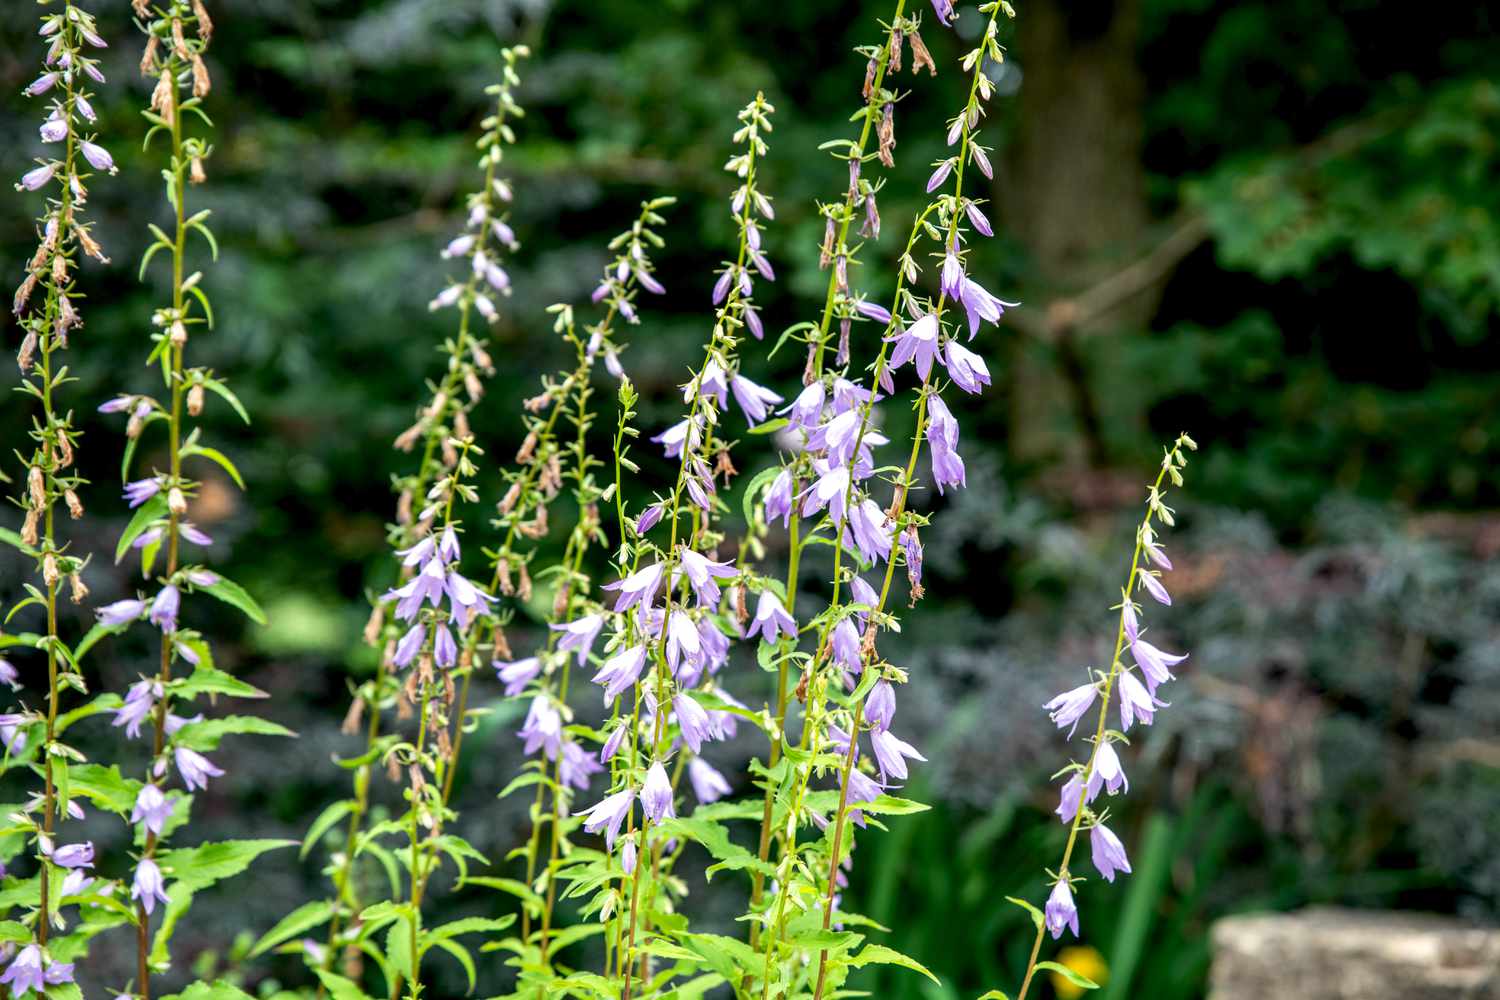 Plante de campanule avec de petites fleurs violettes et blanches à la lumière du soleil